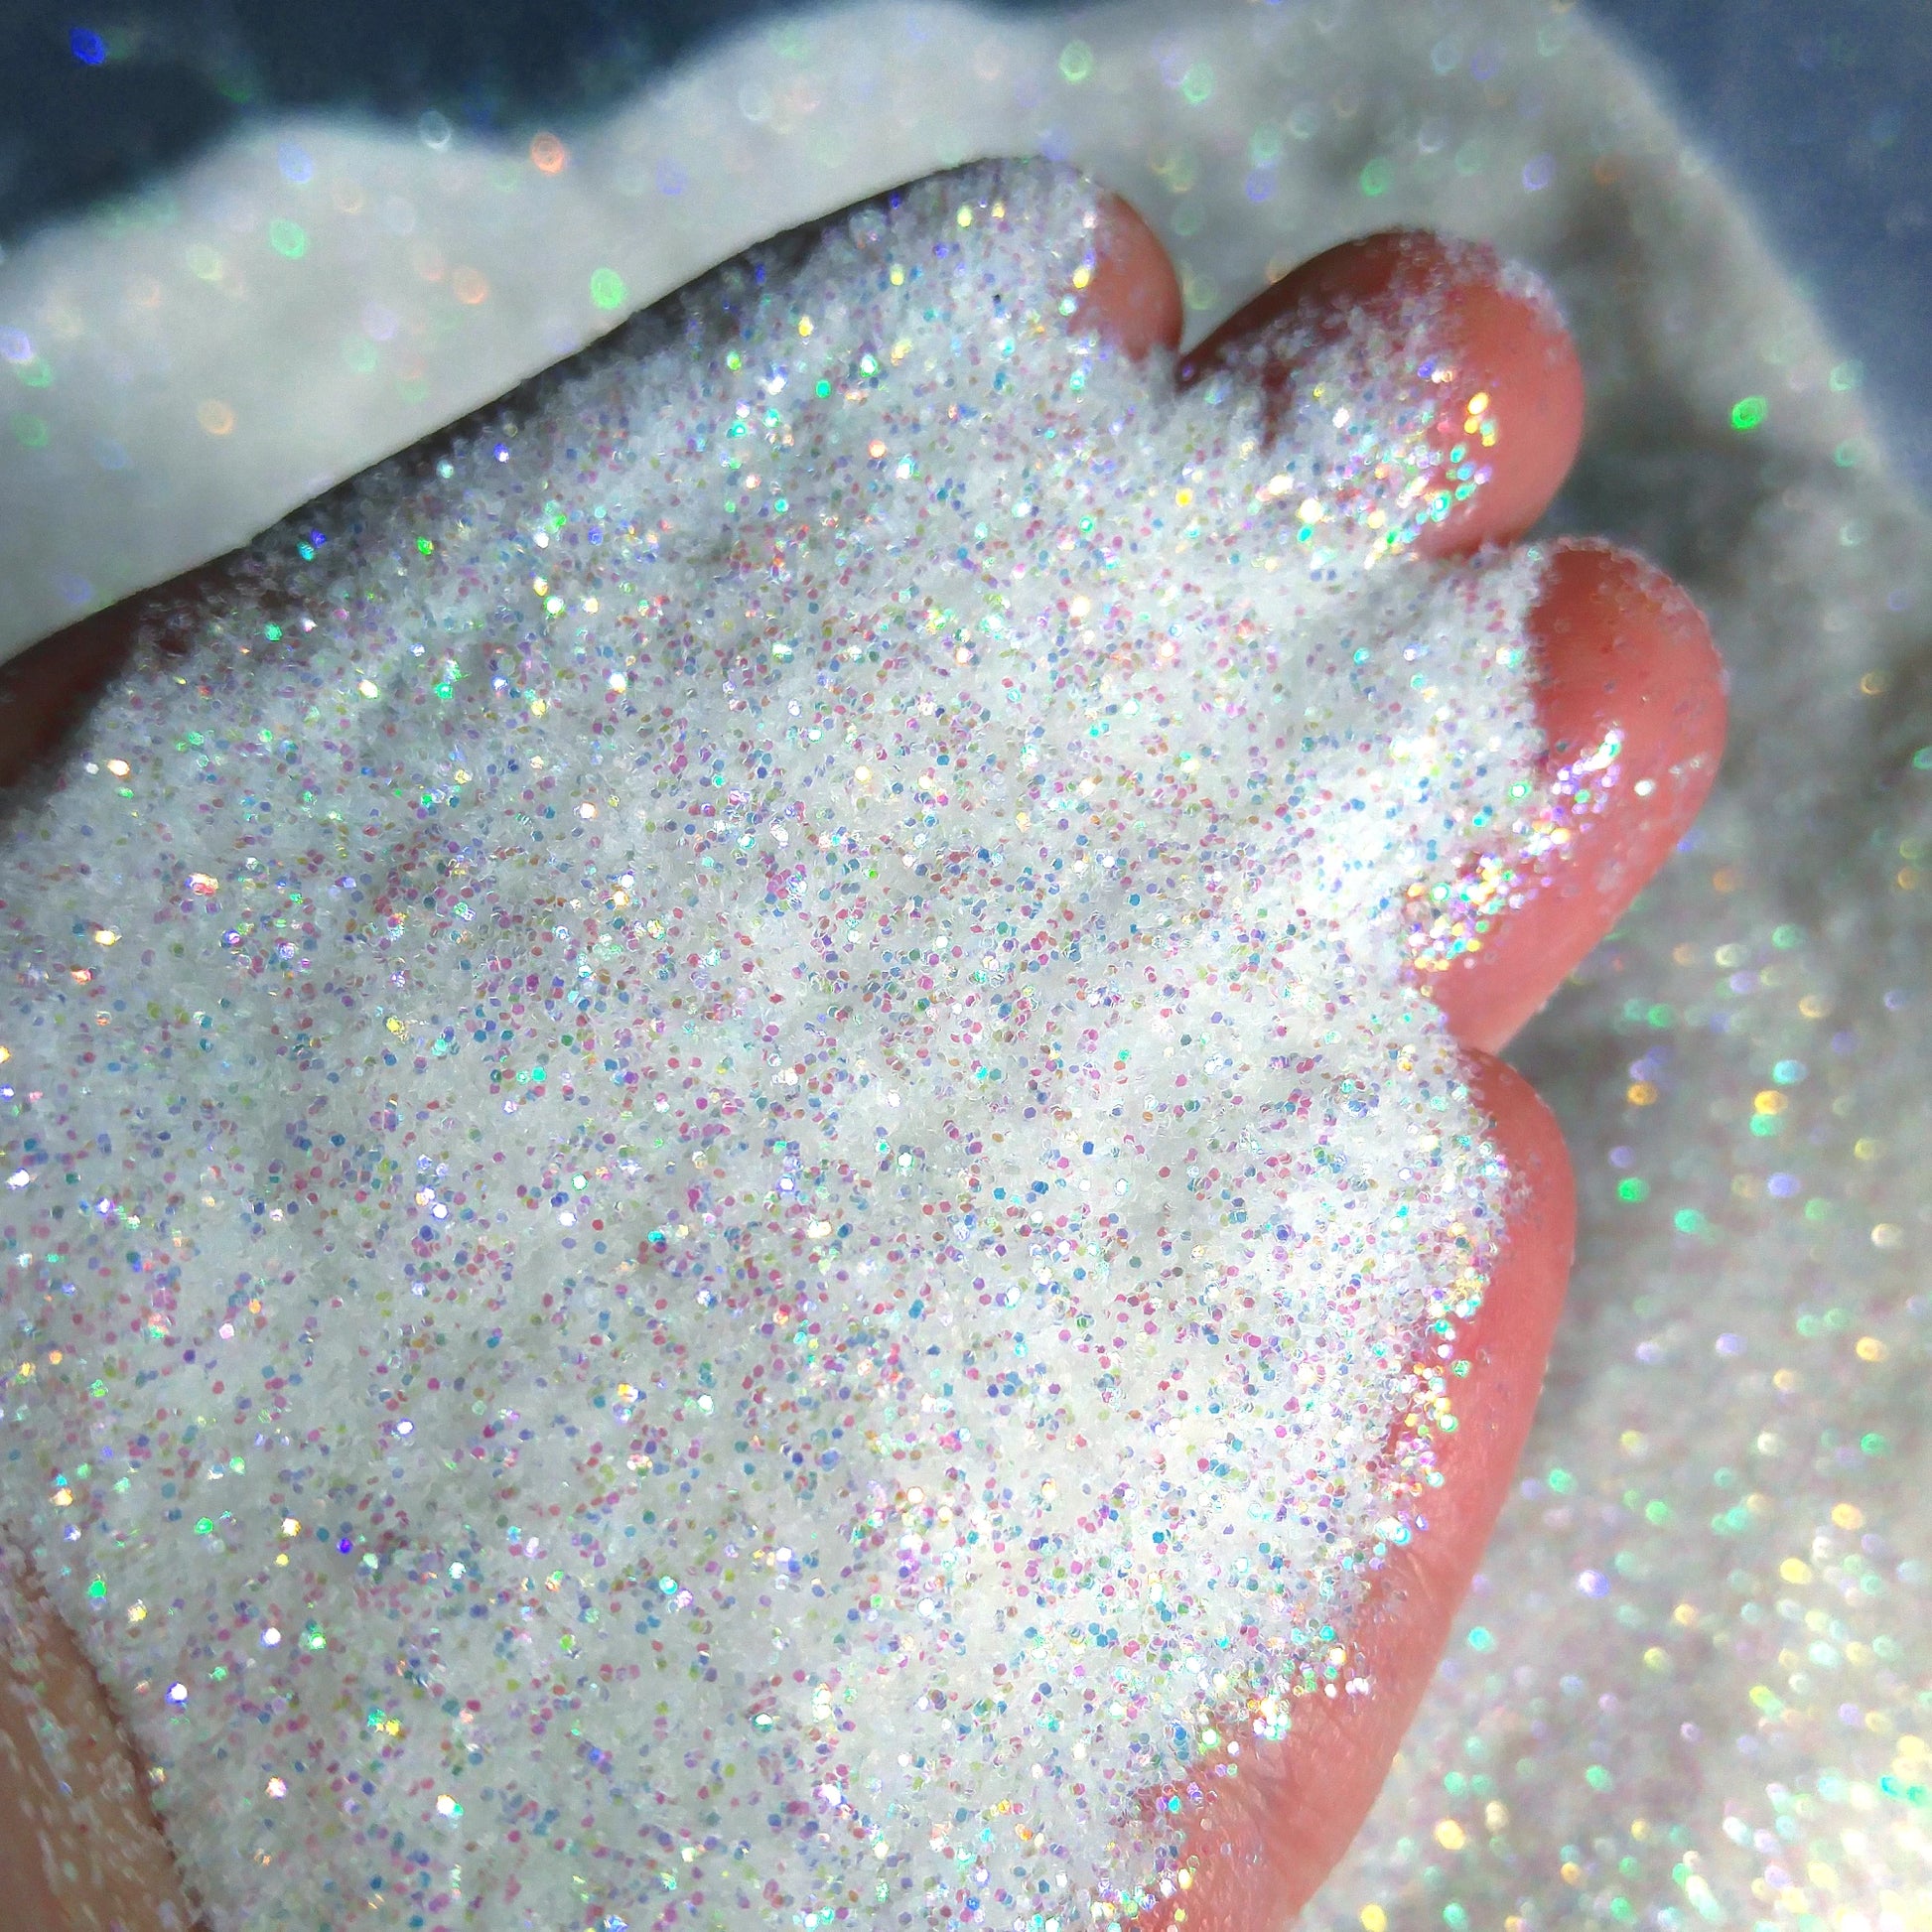 Iridescent White Fine Glitter .2mm - White Opal By Crazoulis Glitter